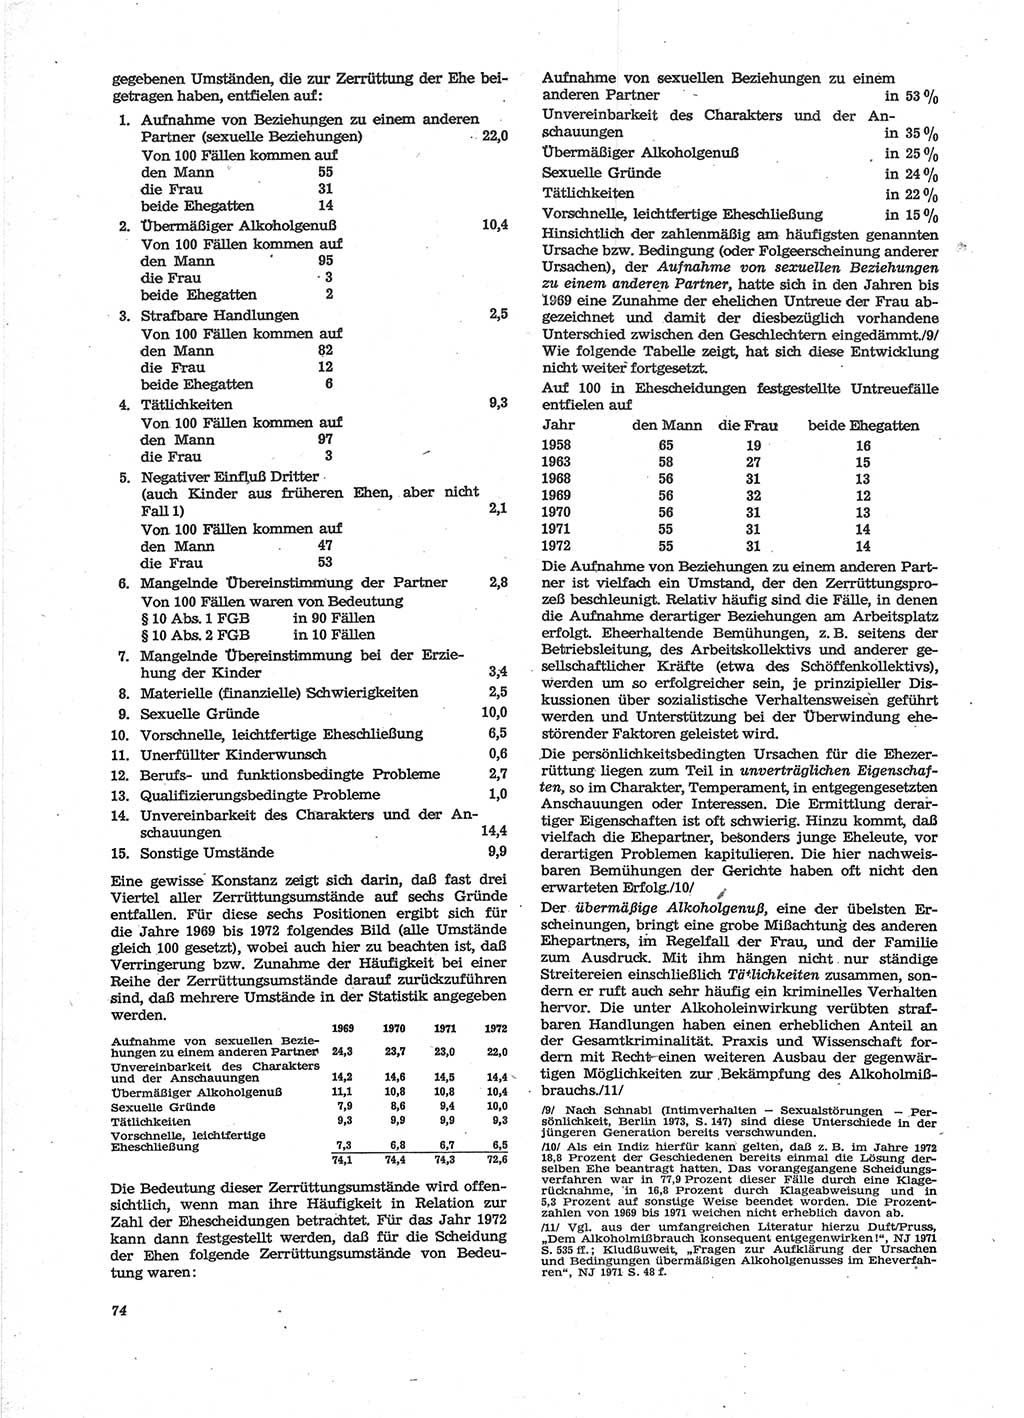 Neue Justiz (NJ), Zeitschrift für Recht und Rechtswissenschaft [Deutsche Demokratische Republik (DDR)], 28. Jahrgang 1974, Seite 74 (NJ DDR 1974, S. 74)